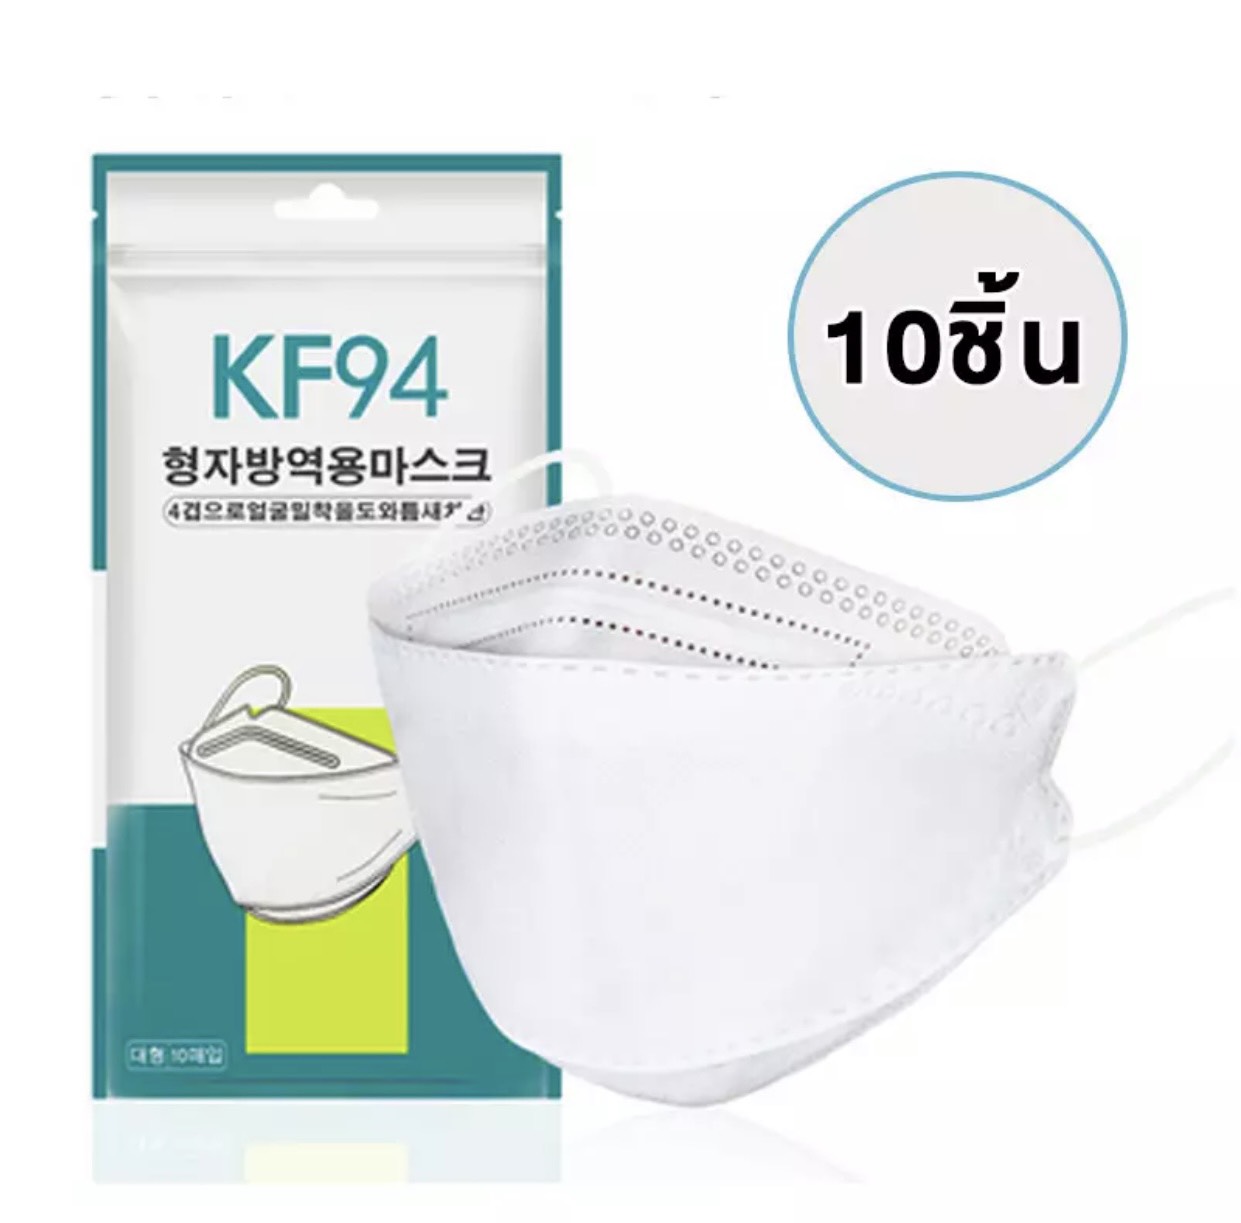 (ฮิตที่สุดใช้ดีมาก)🚩 KF94 หน้ากากอนามัยเกาหลี🚩 (แพ๊ค 10 ชิ้น) แมสเกาหลี งานคุณภาพ ป้องกันไวรัส pm2.5 พร้อมส่งจากไทย